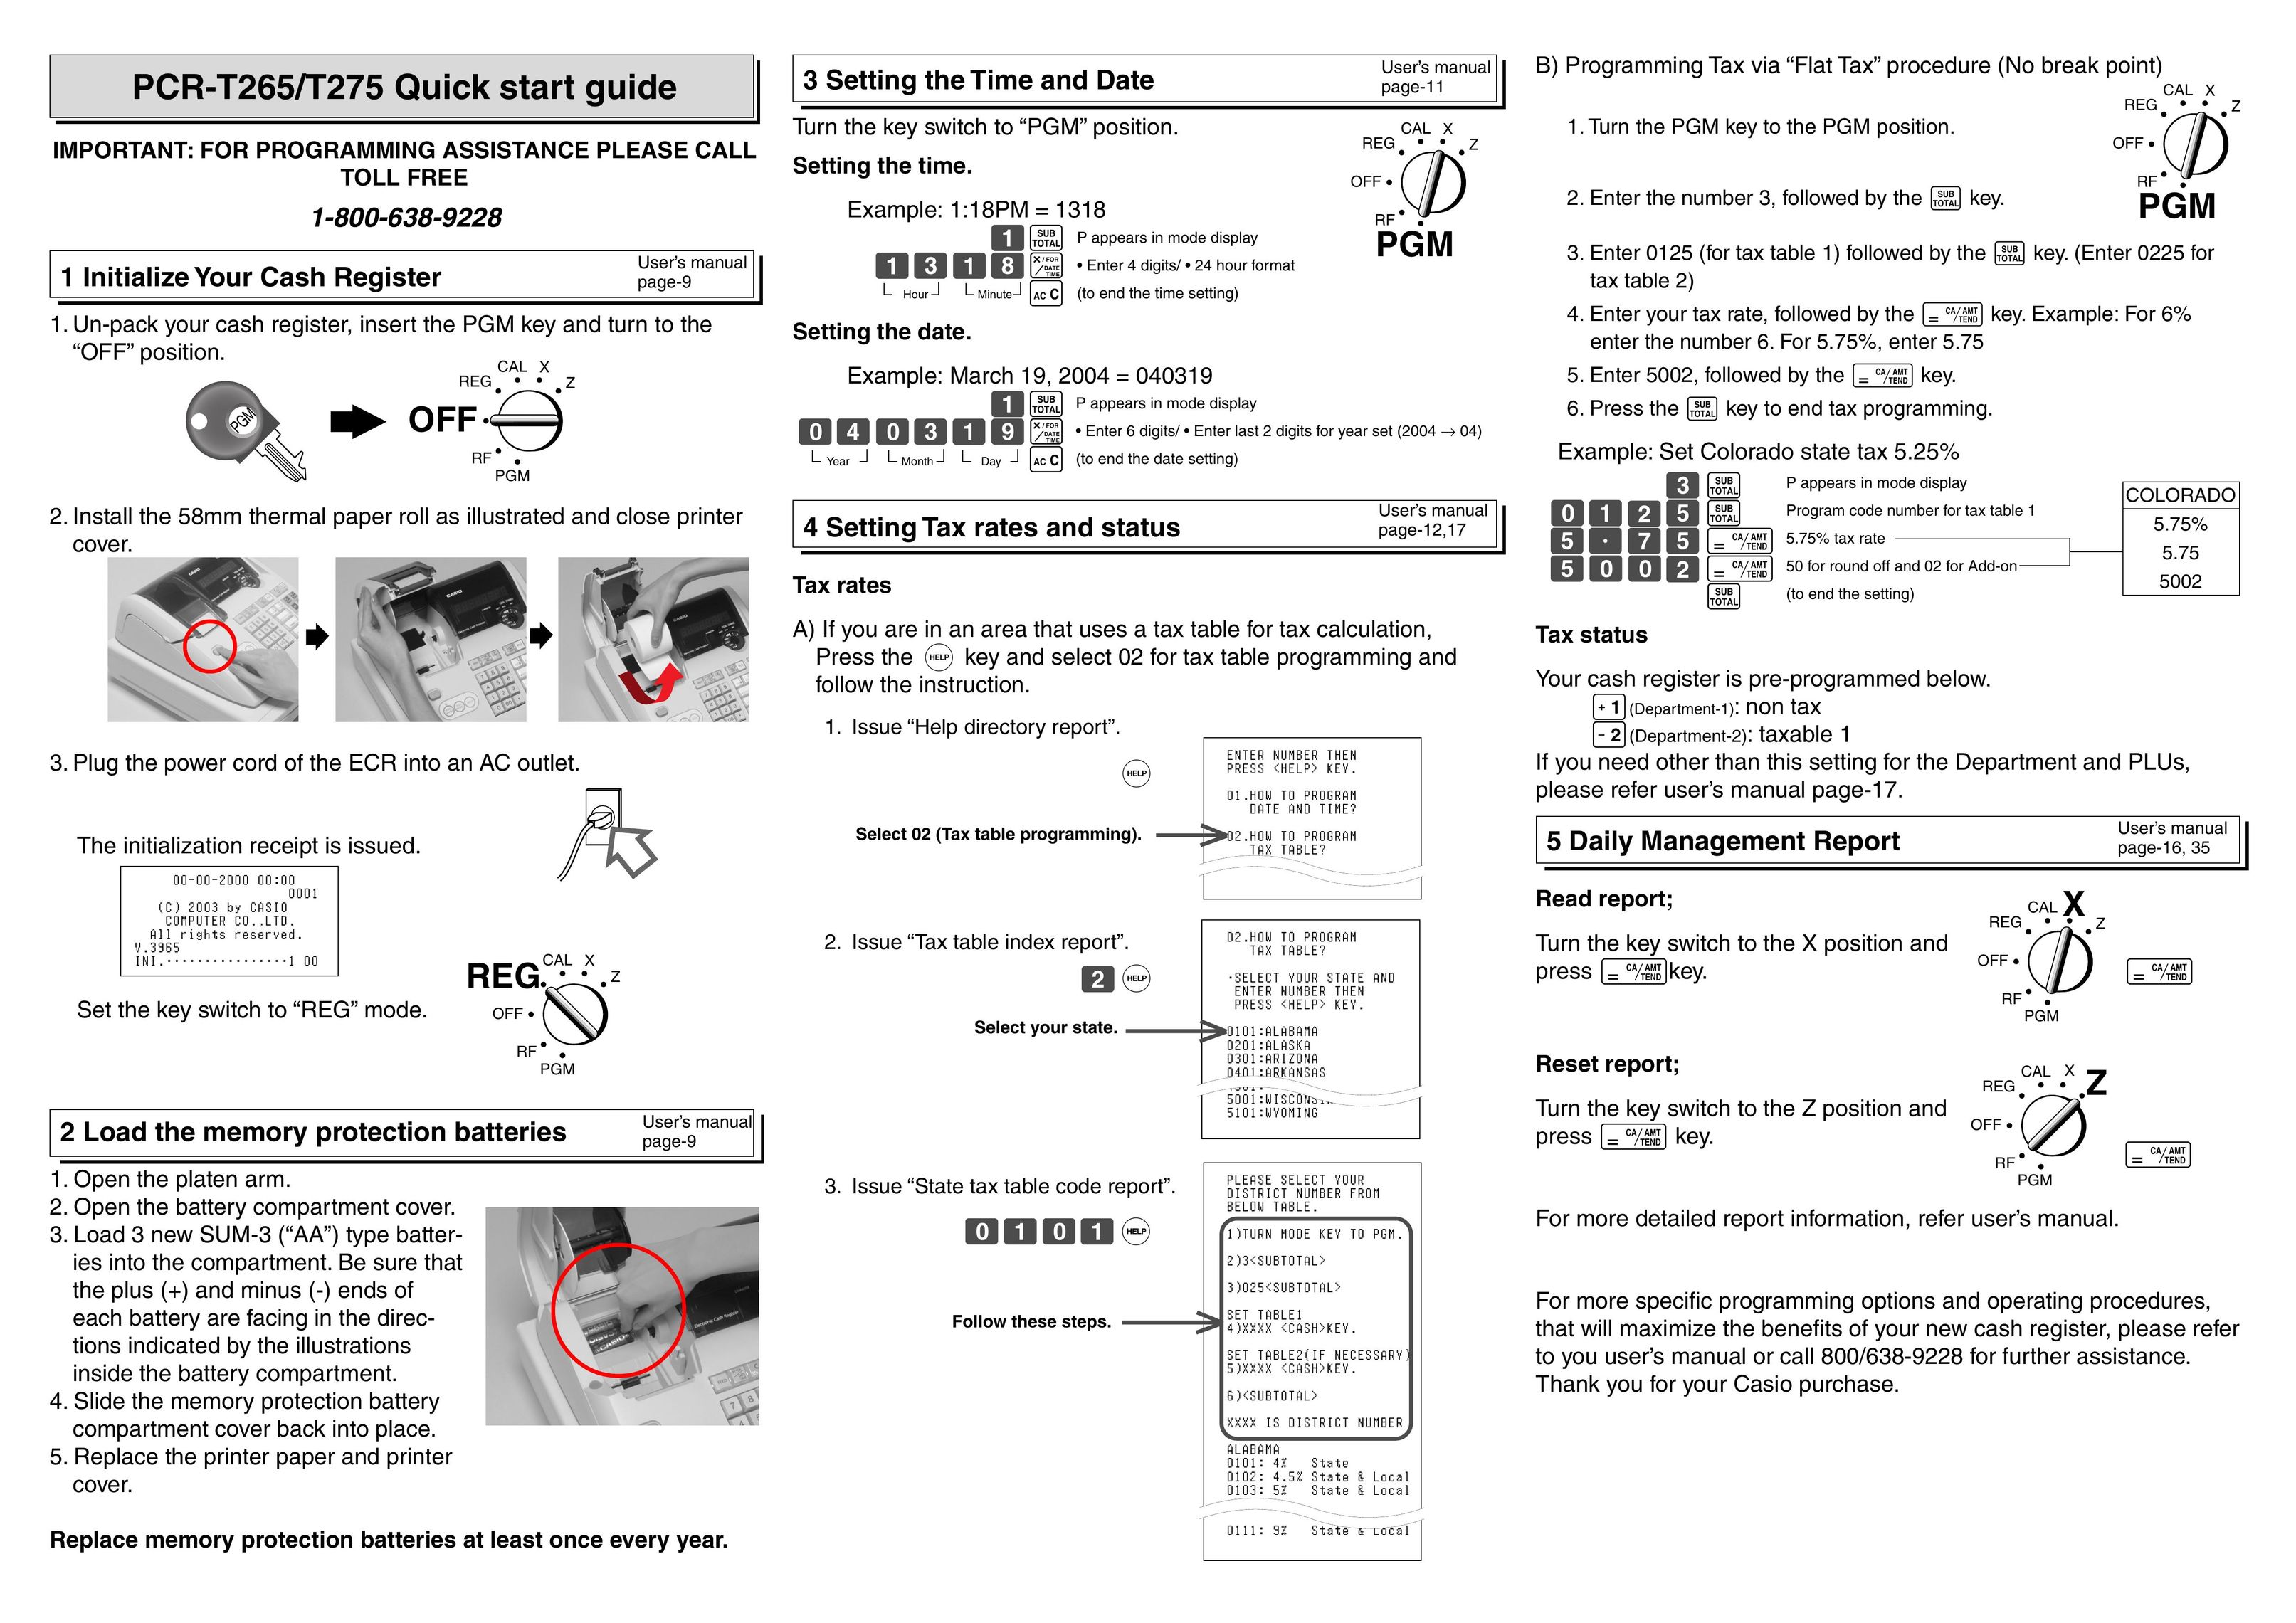 Casio PCR-T265 Cash Register User Manual